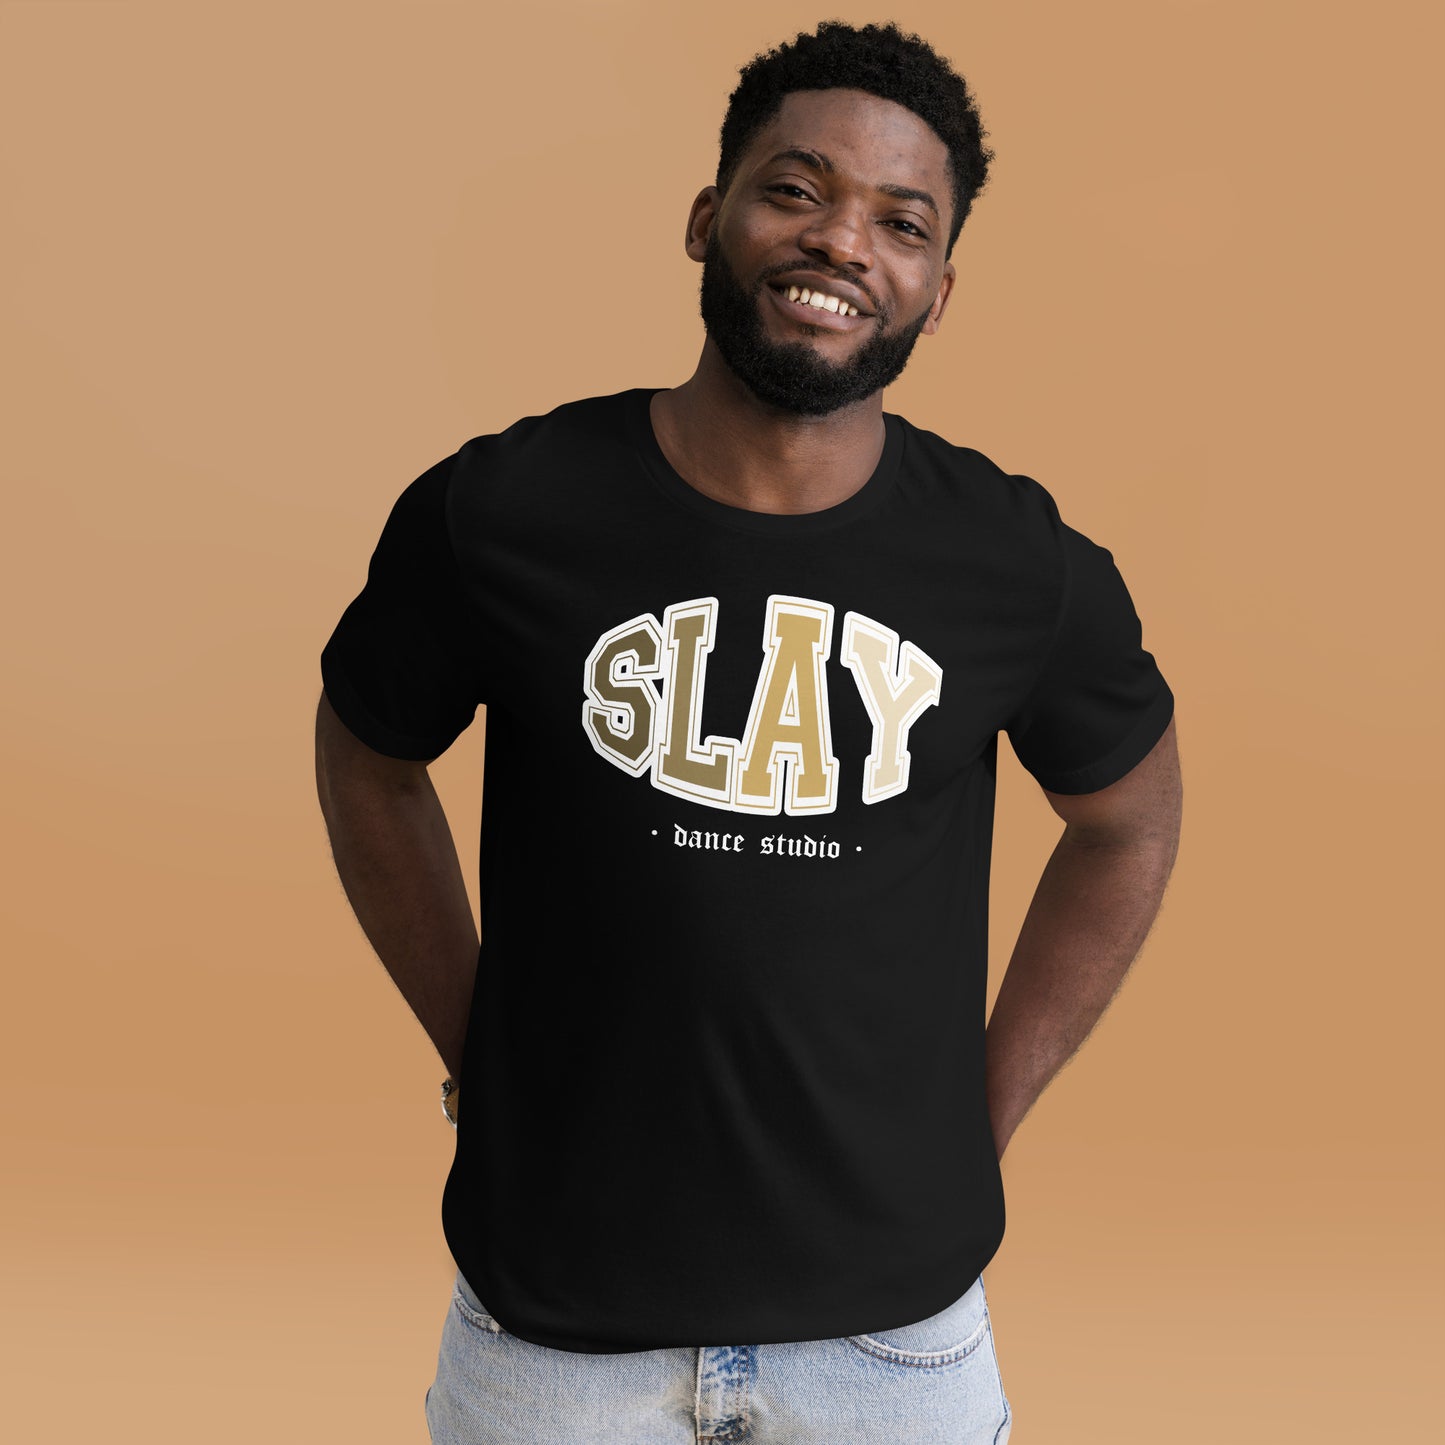 Slay Nude Unisex T-Shirt